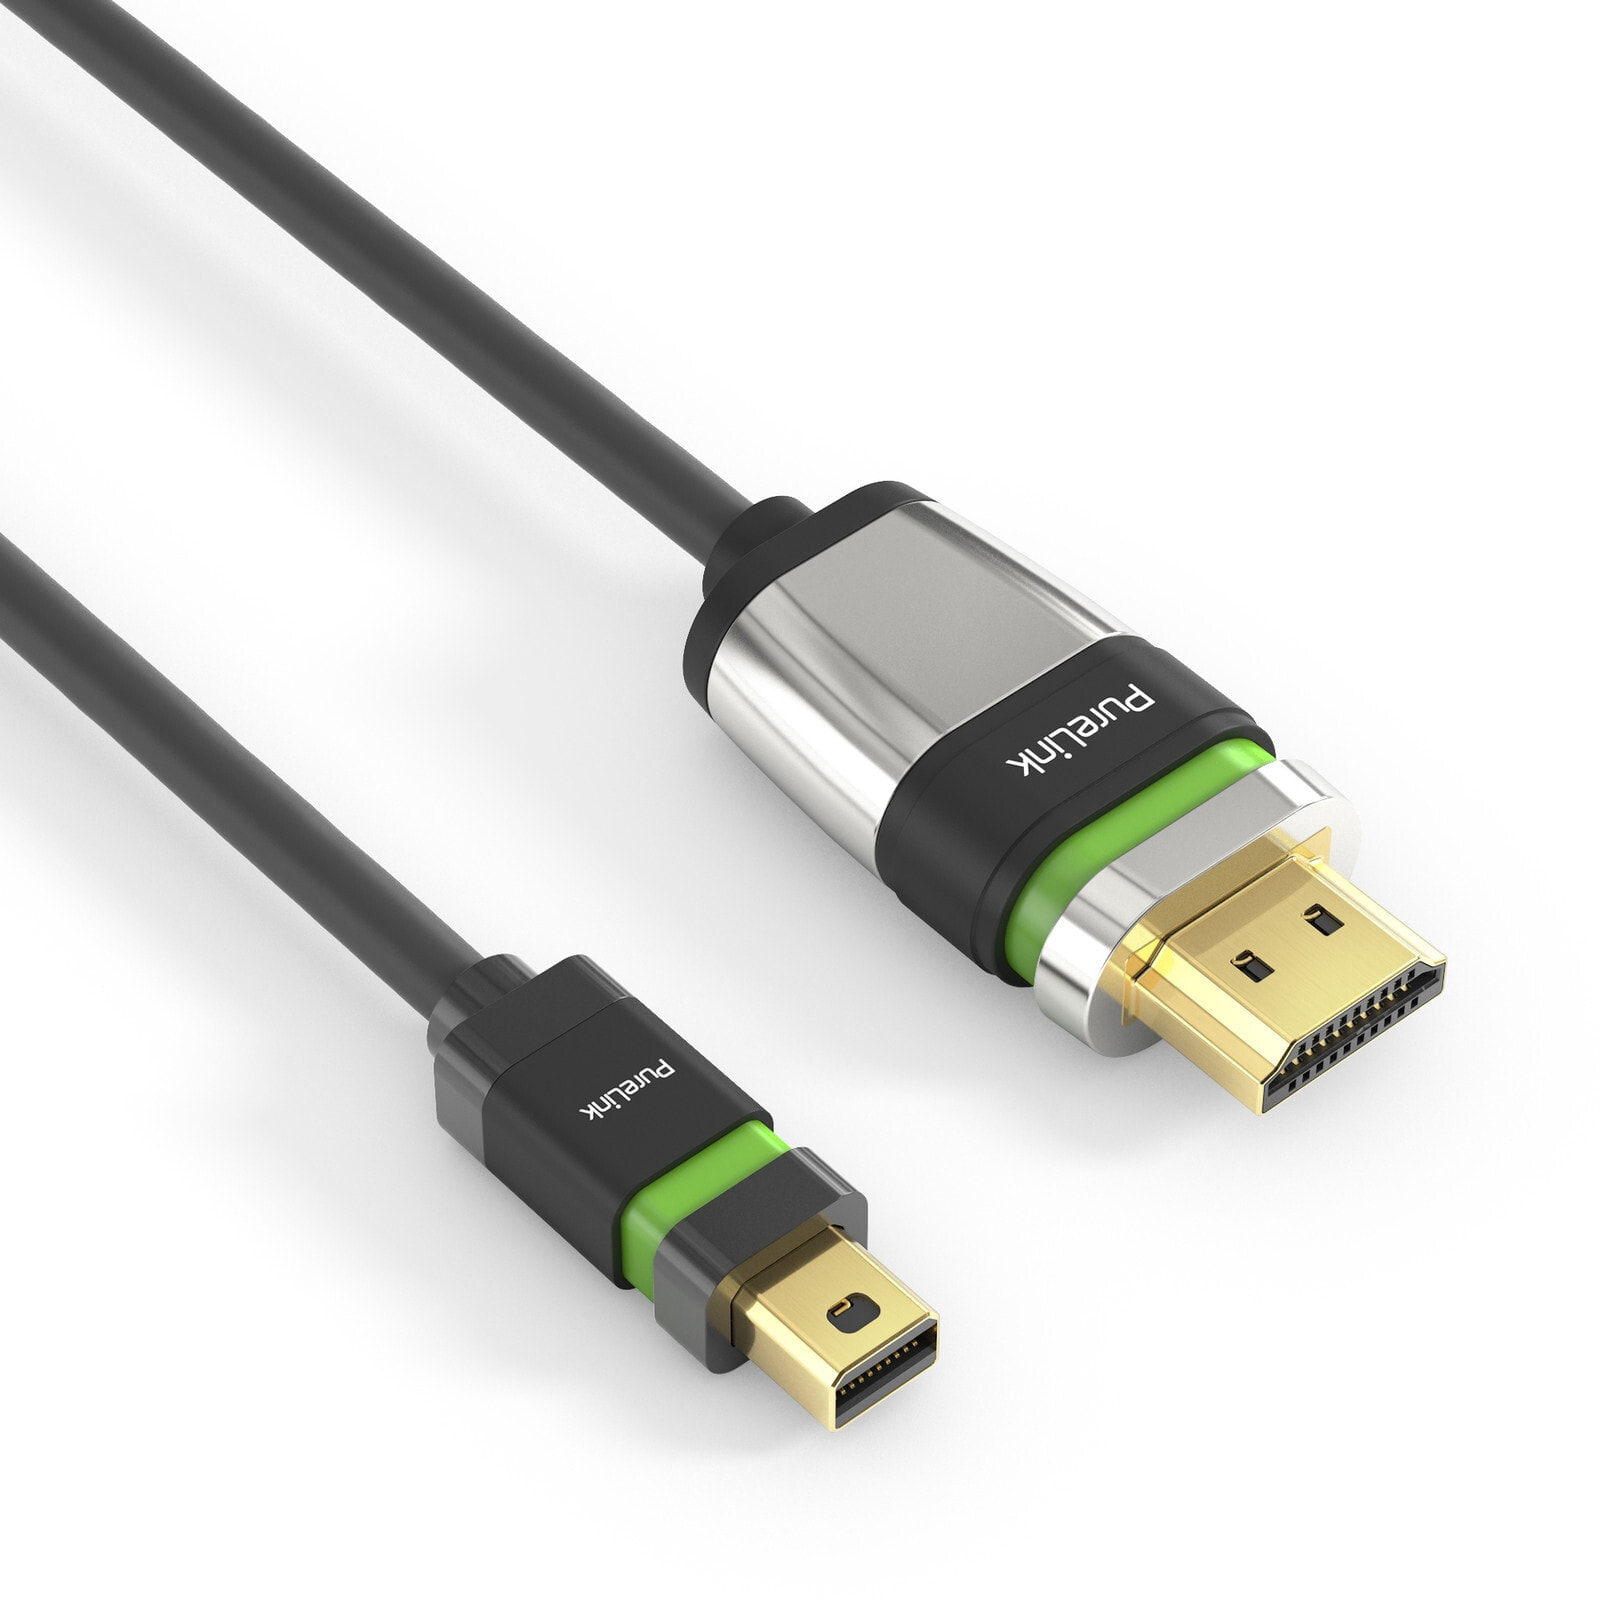 PureLink ULS2000-010 видео кабель адаптер 1 m Mini DisplayPort HDMI Тип A (Стандарт) Черный